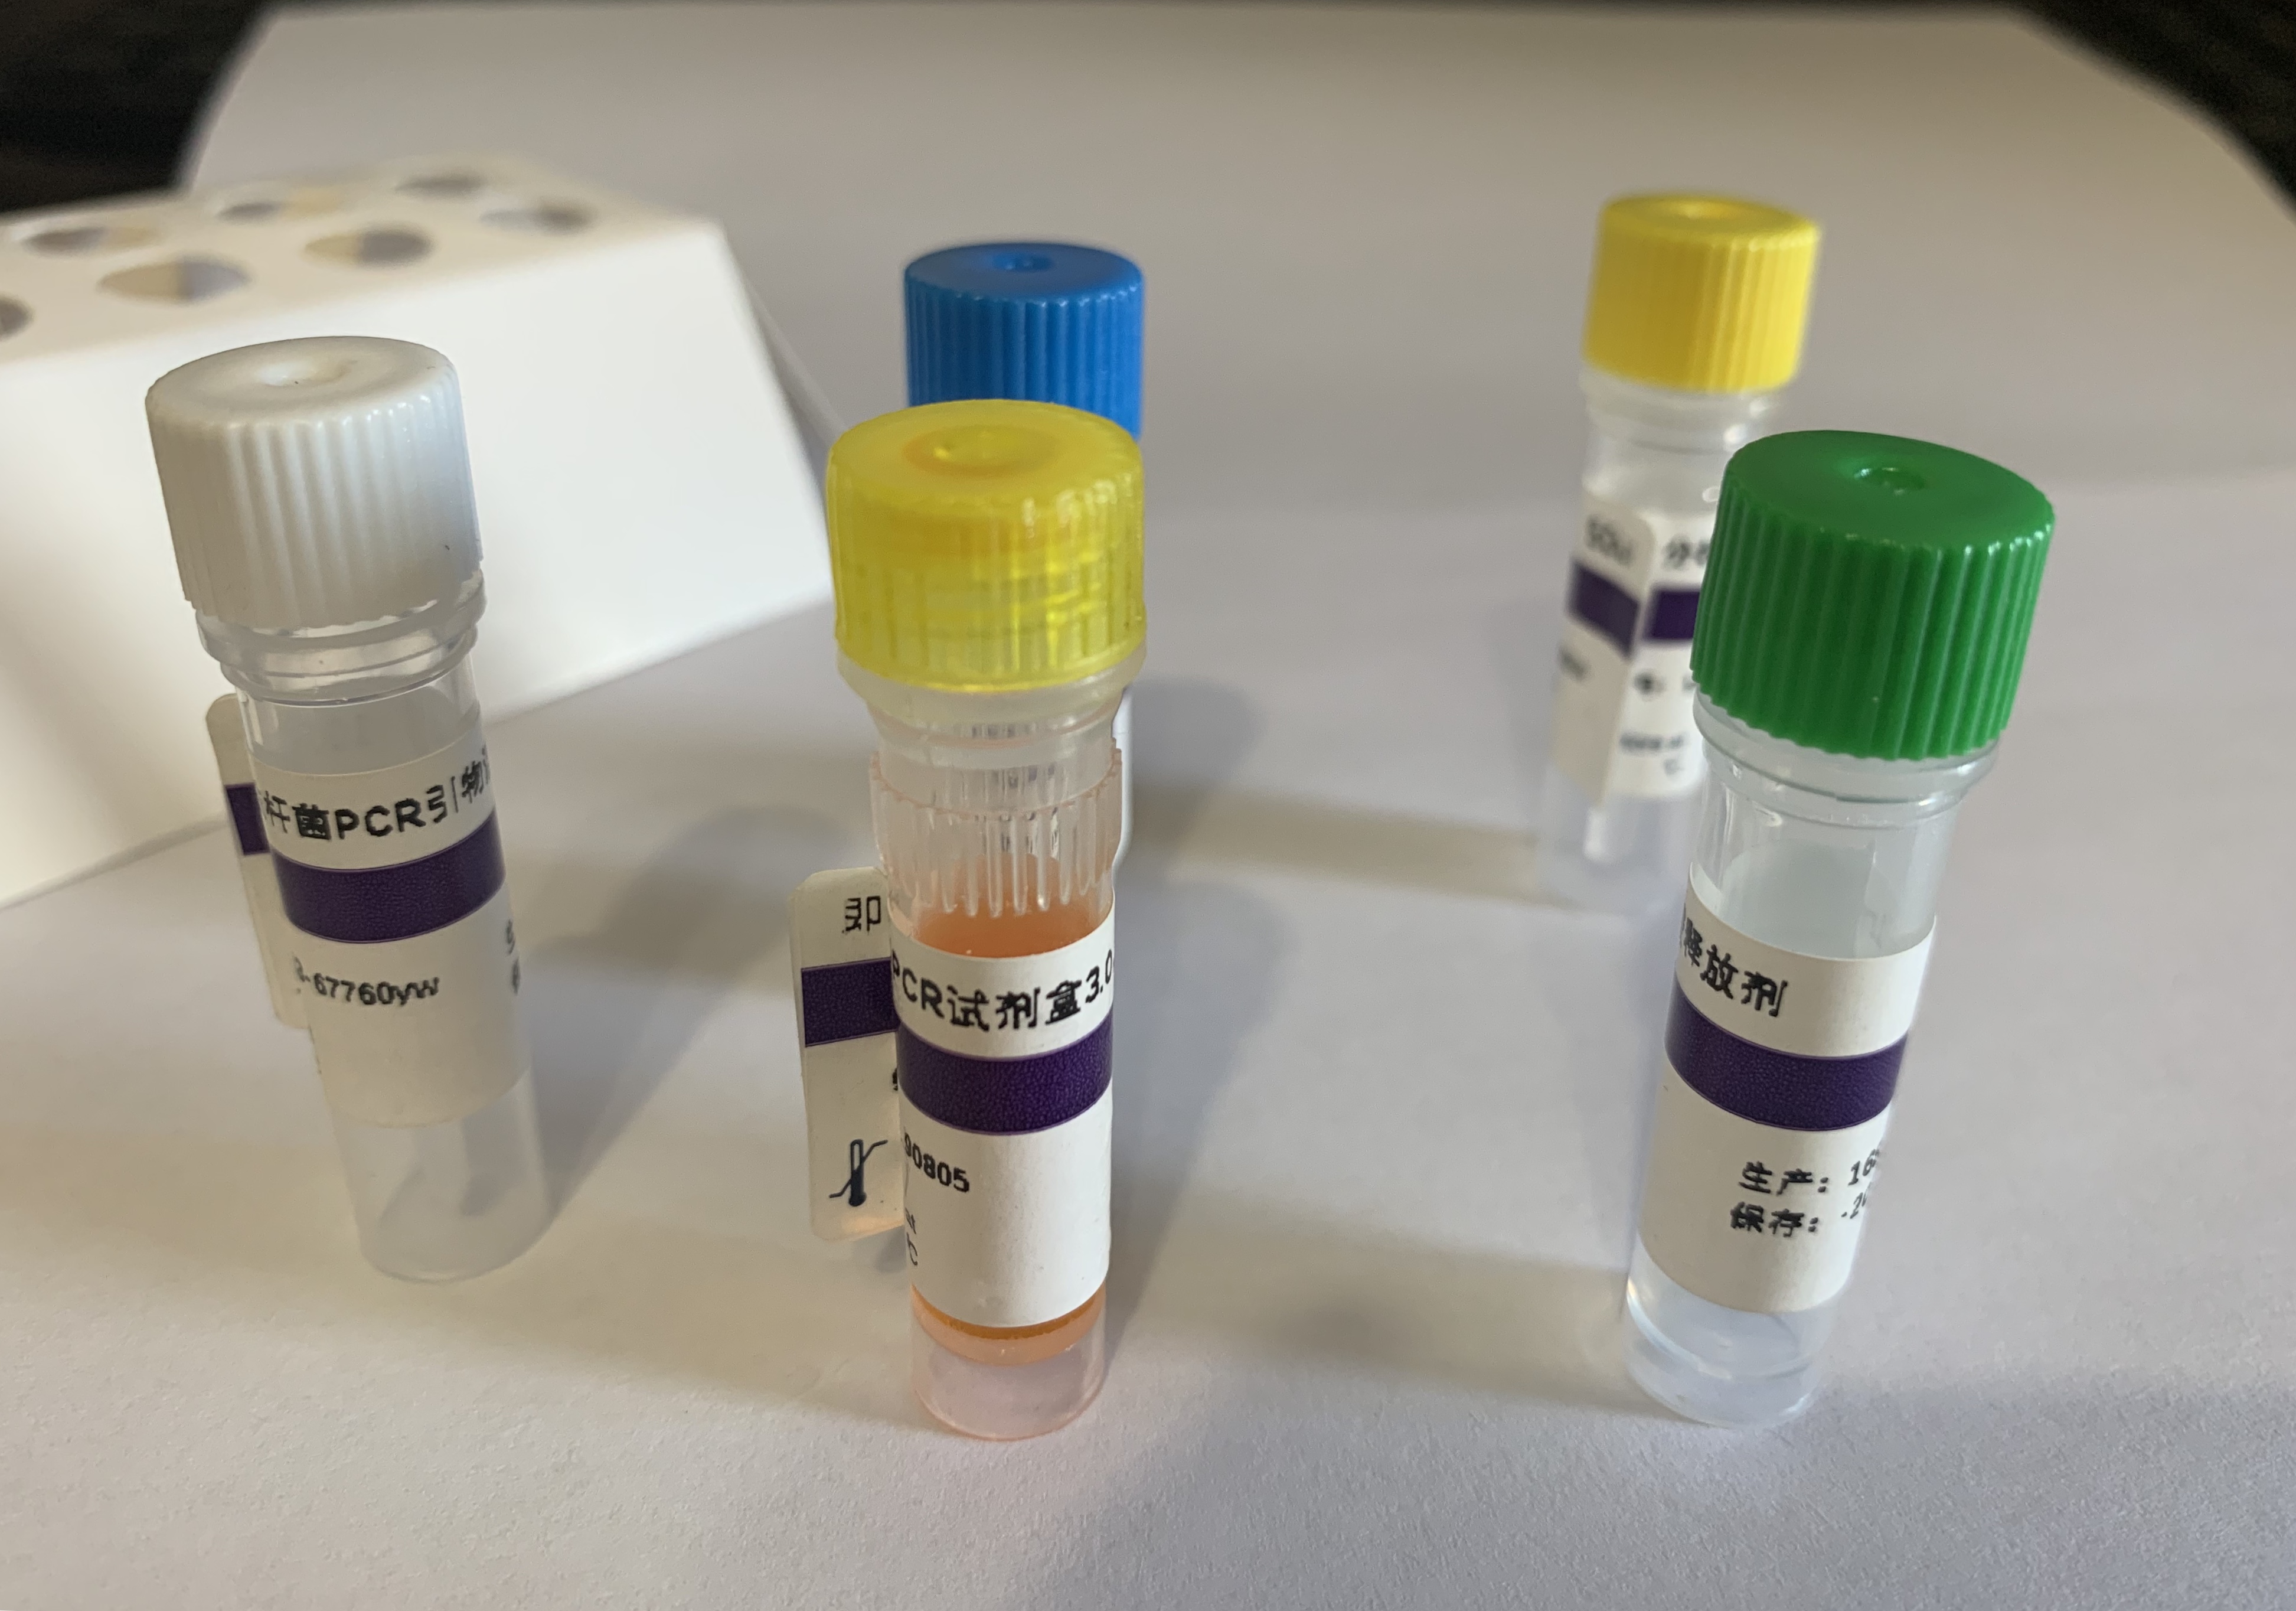 抗碳青霉烯肺炎克雷伯菌探针法荧光定量PCR试剂盒